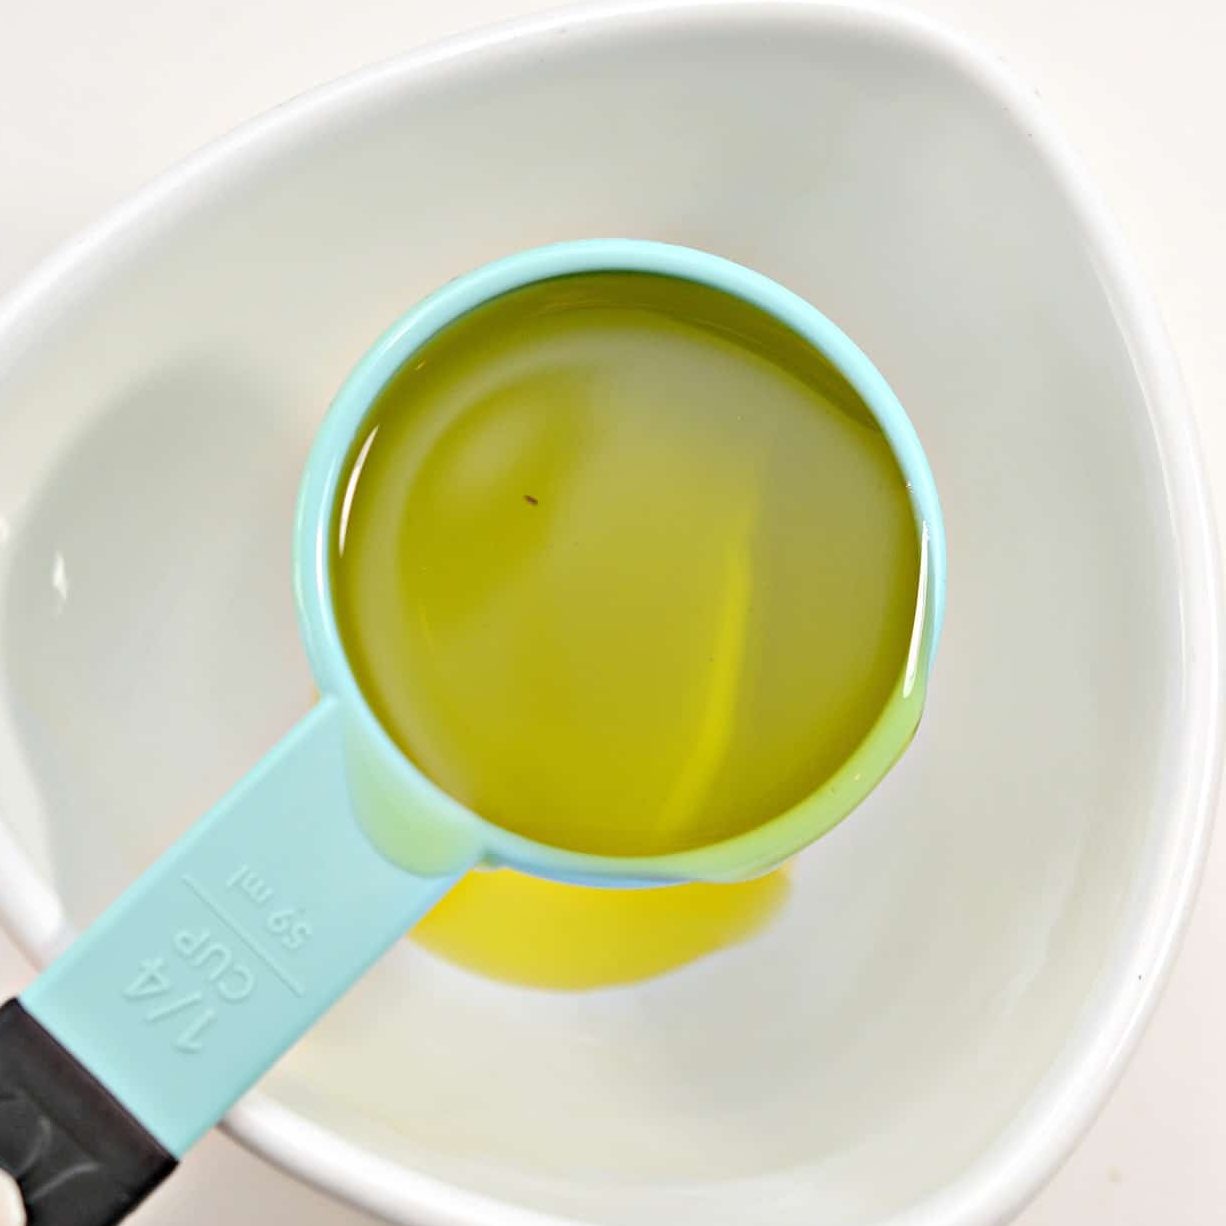 Adding ¼ C. Olive oil